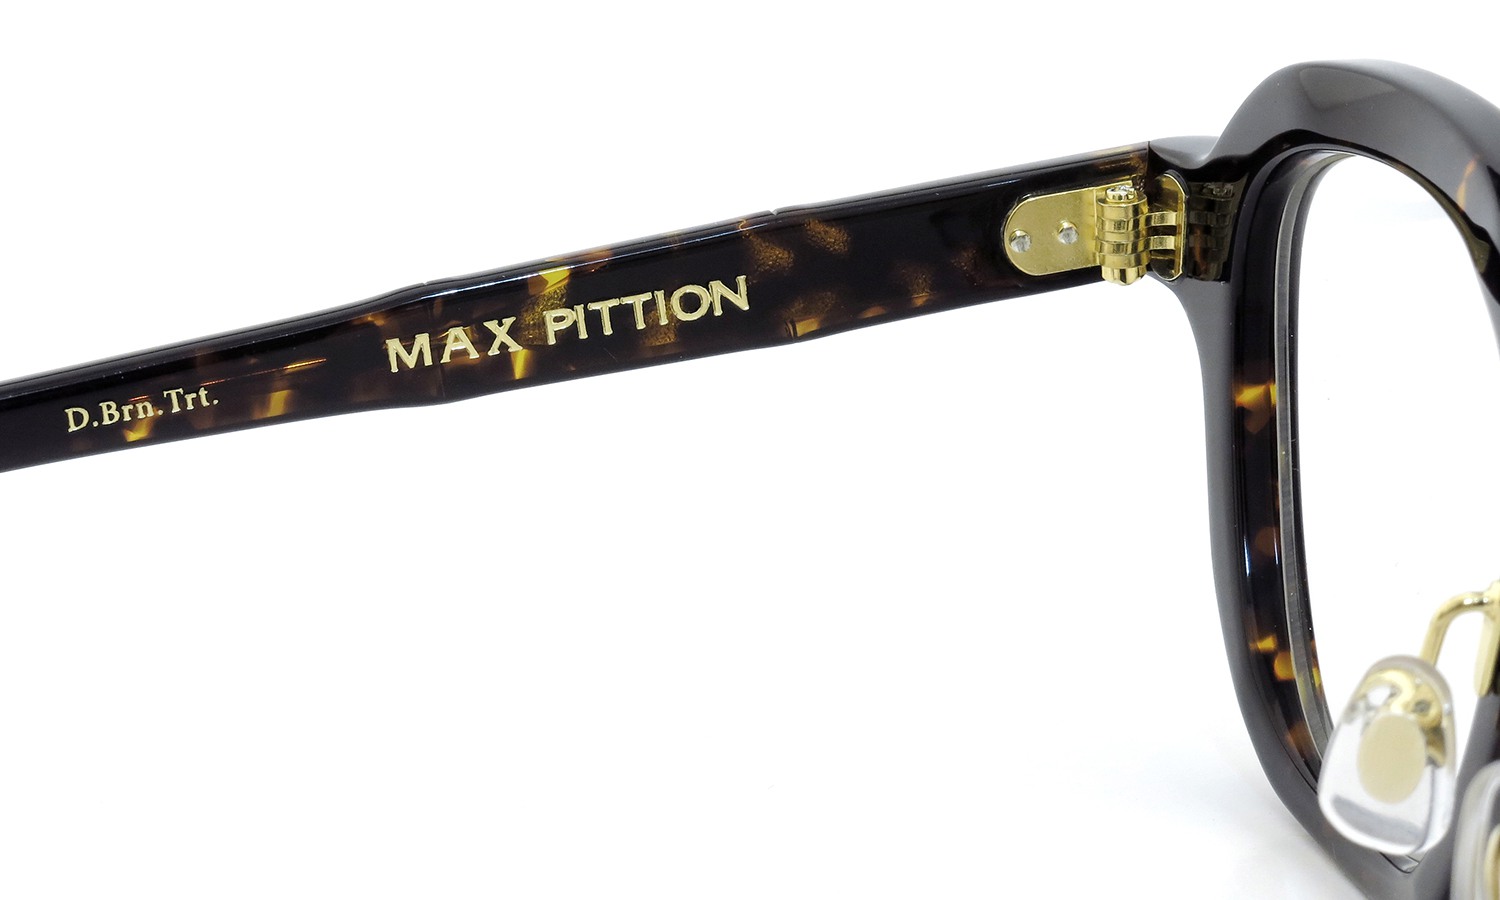 MAX PITTION マックス・ピティオン メガネ [MAP COLLECTION] Bronson ブロンソン 44size D.Brn.Trt.